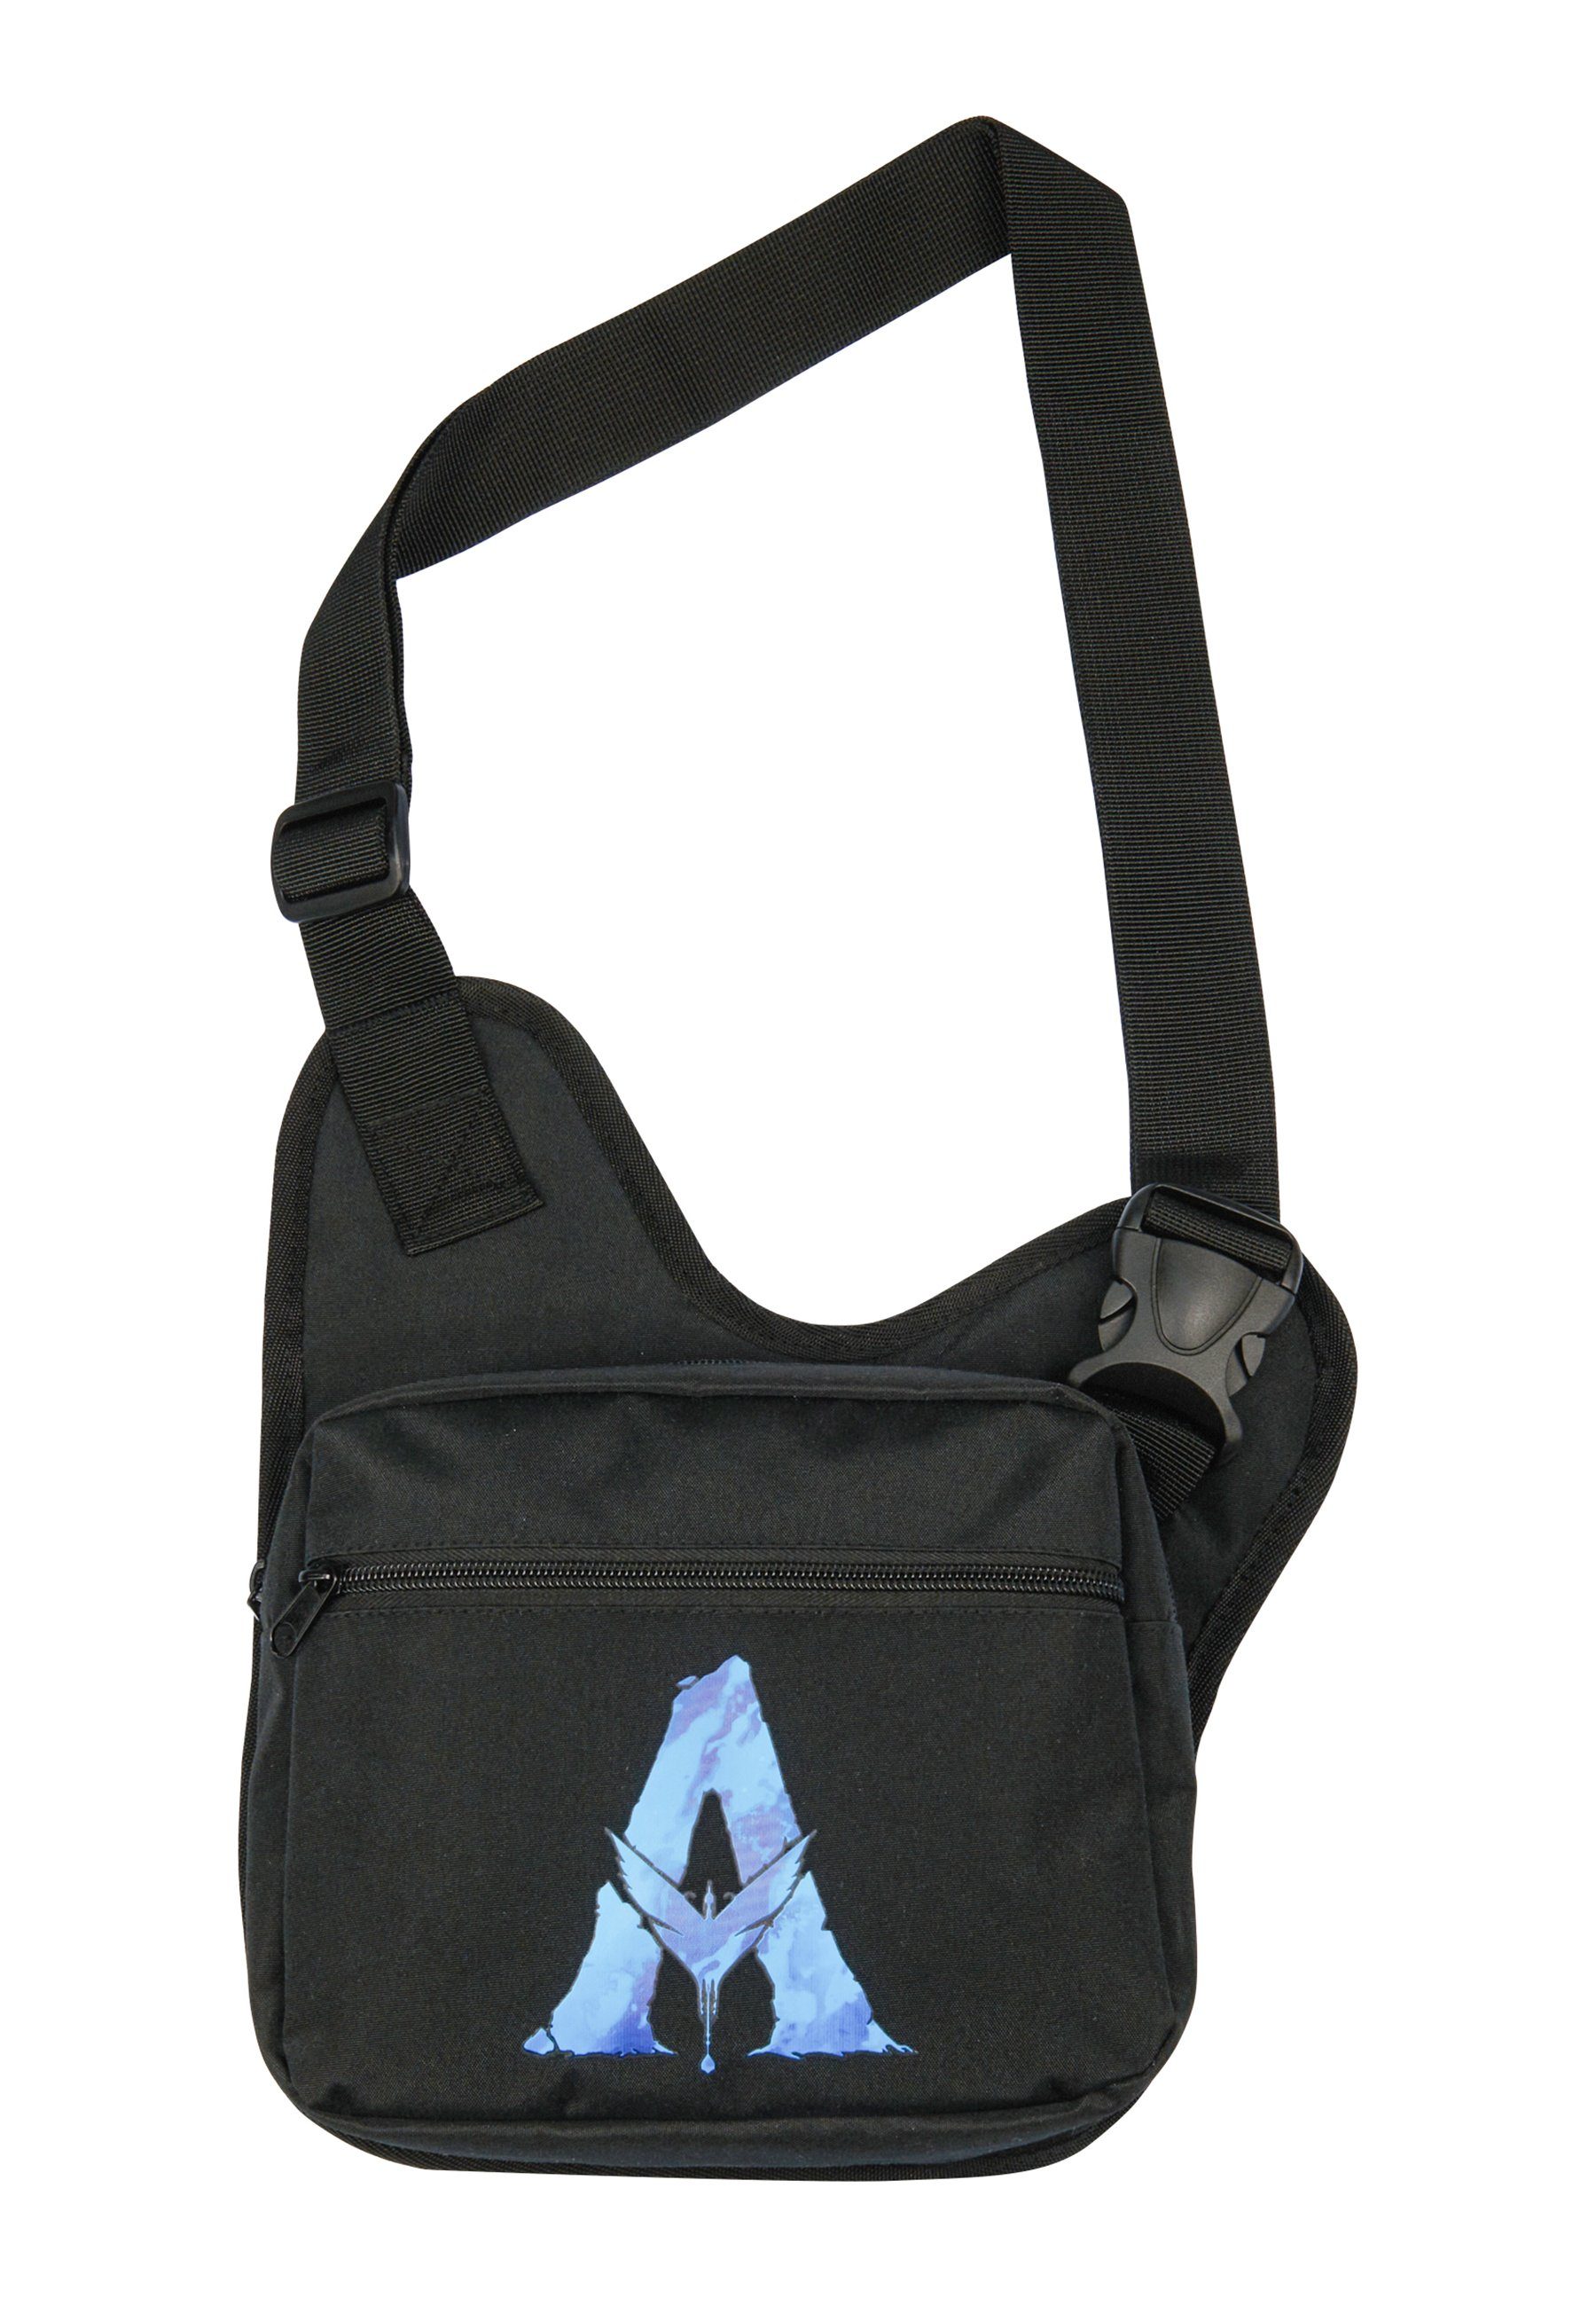 Herren Cross Bag Umhängetasche Bum Bag für Umhängetasche ONOMATO! Avatar Body